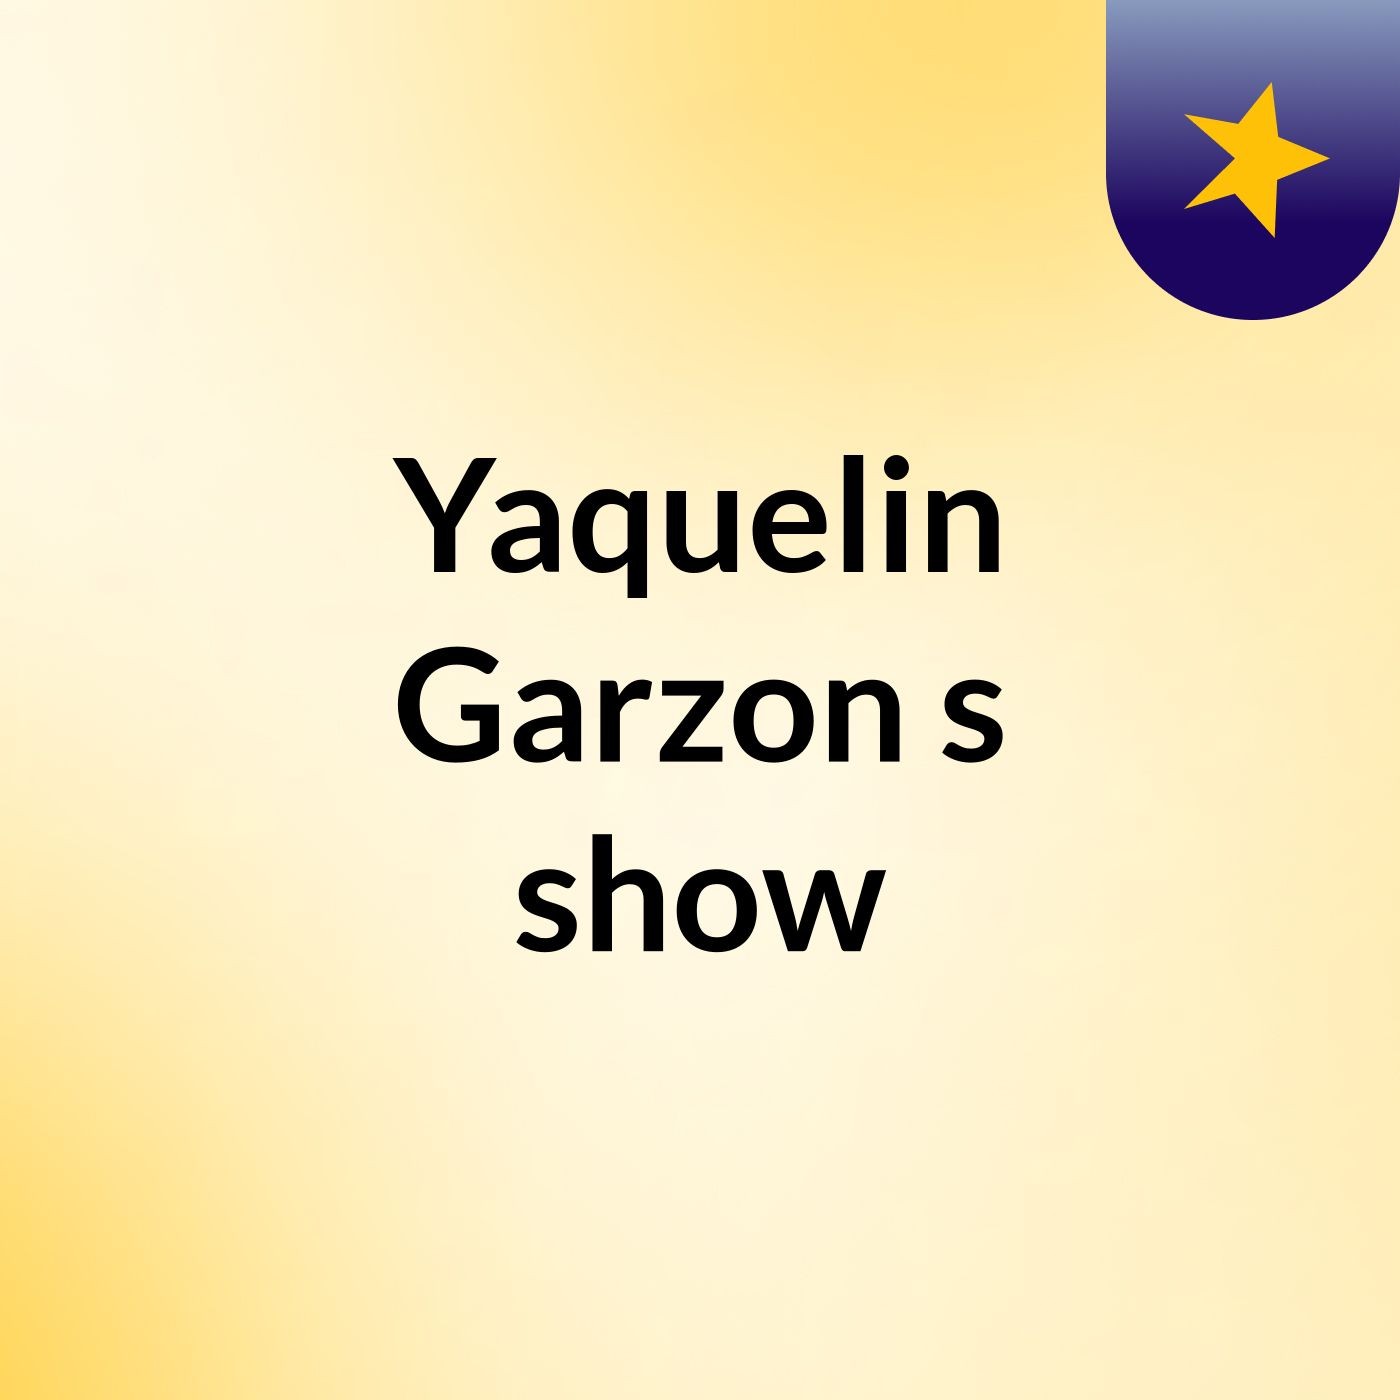 Yaquelin Garzon's show